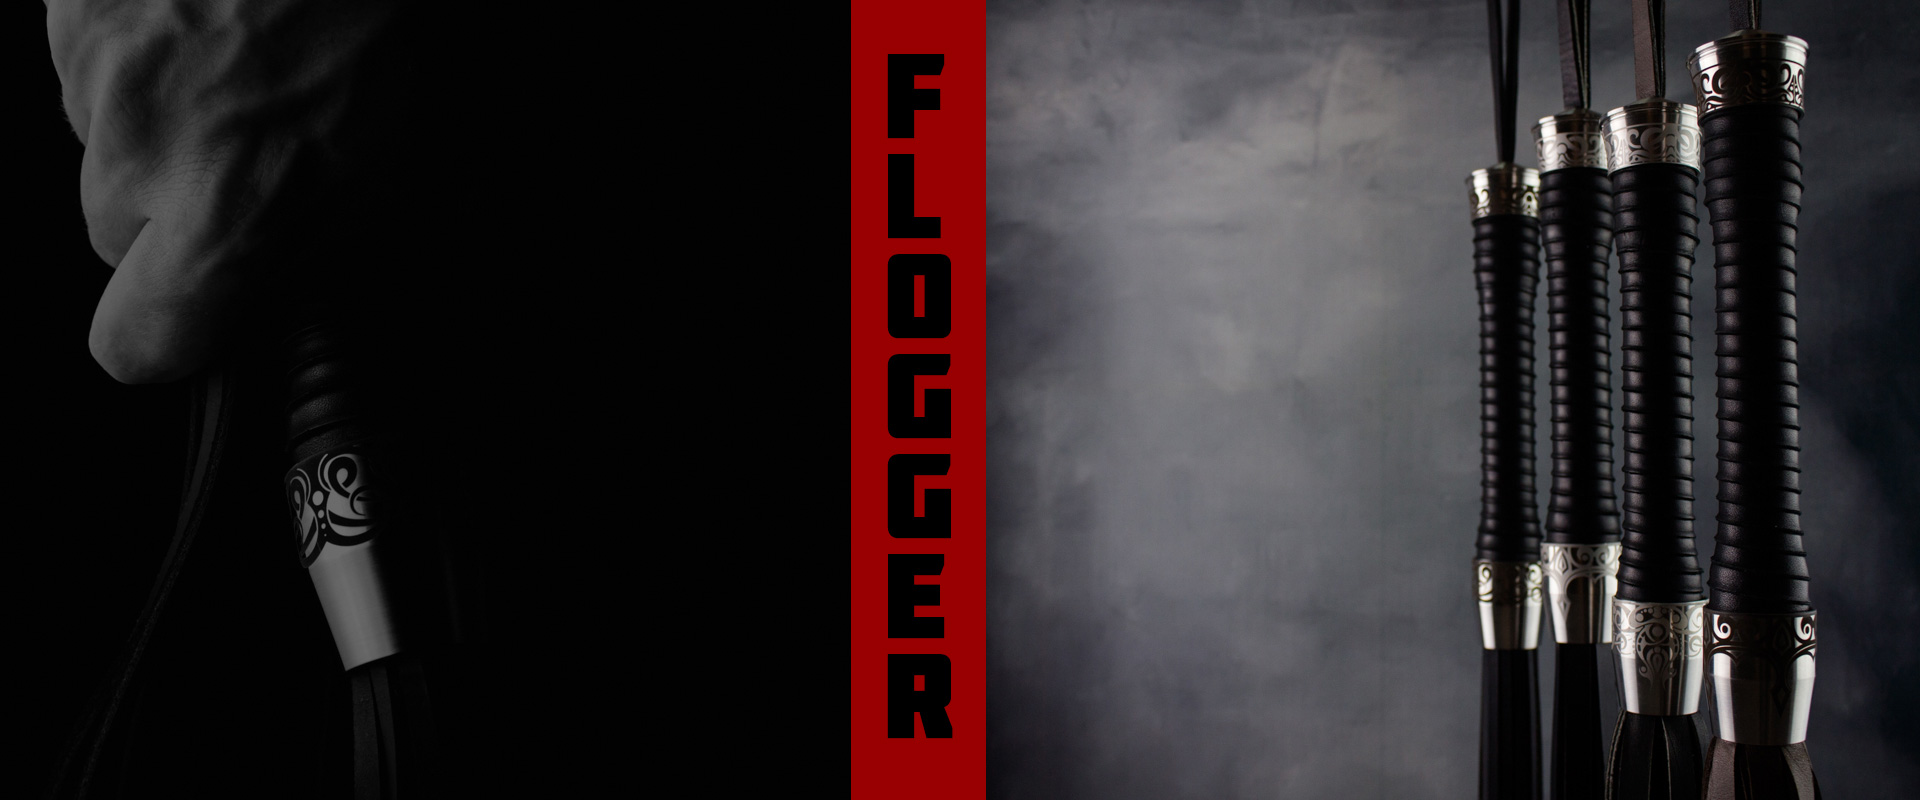 steelhead floggers slider 2 3